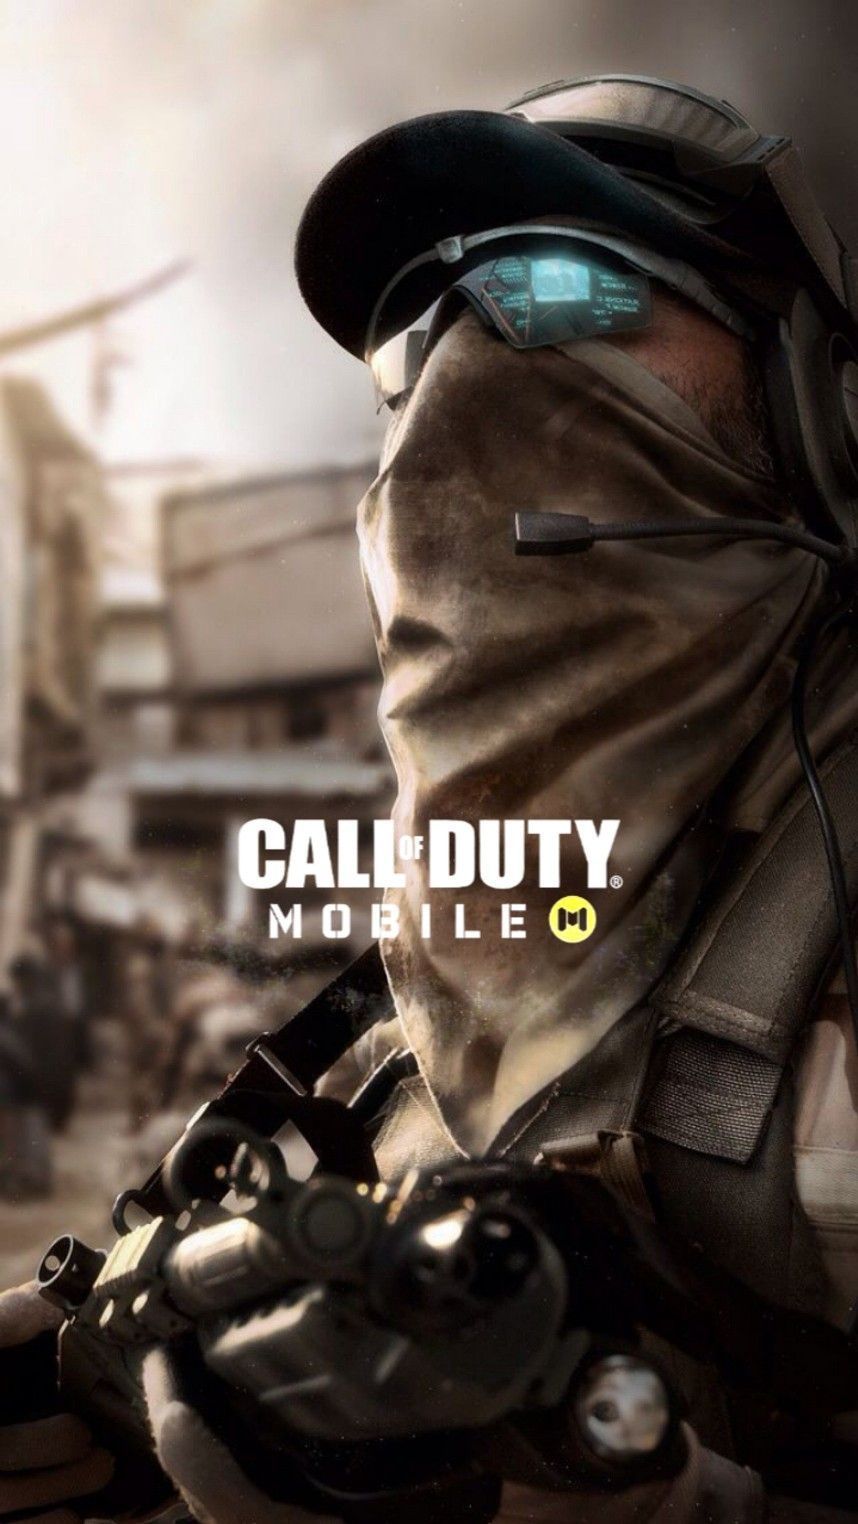 Wallpaper Call Of Duty Mobile. Fondos de pantalla de juegos